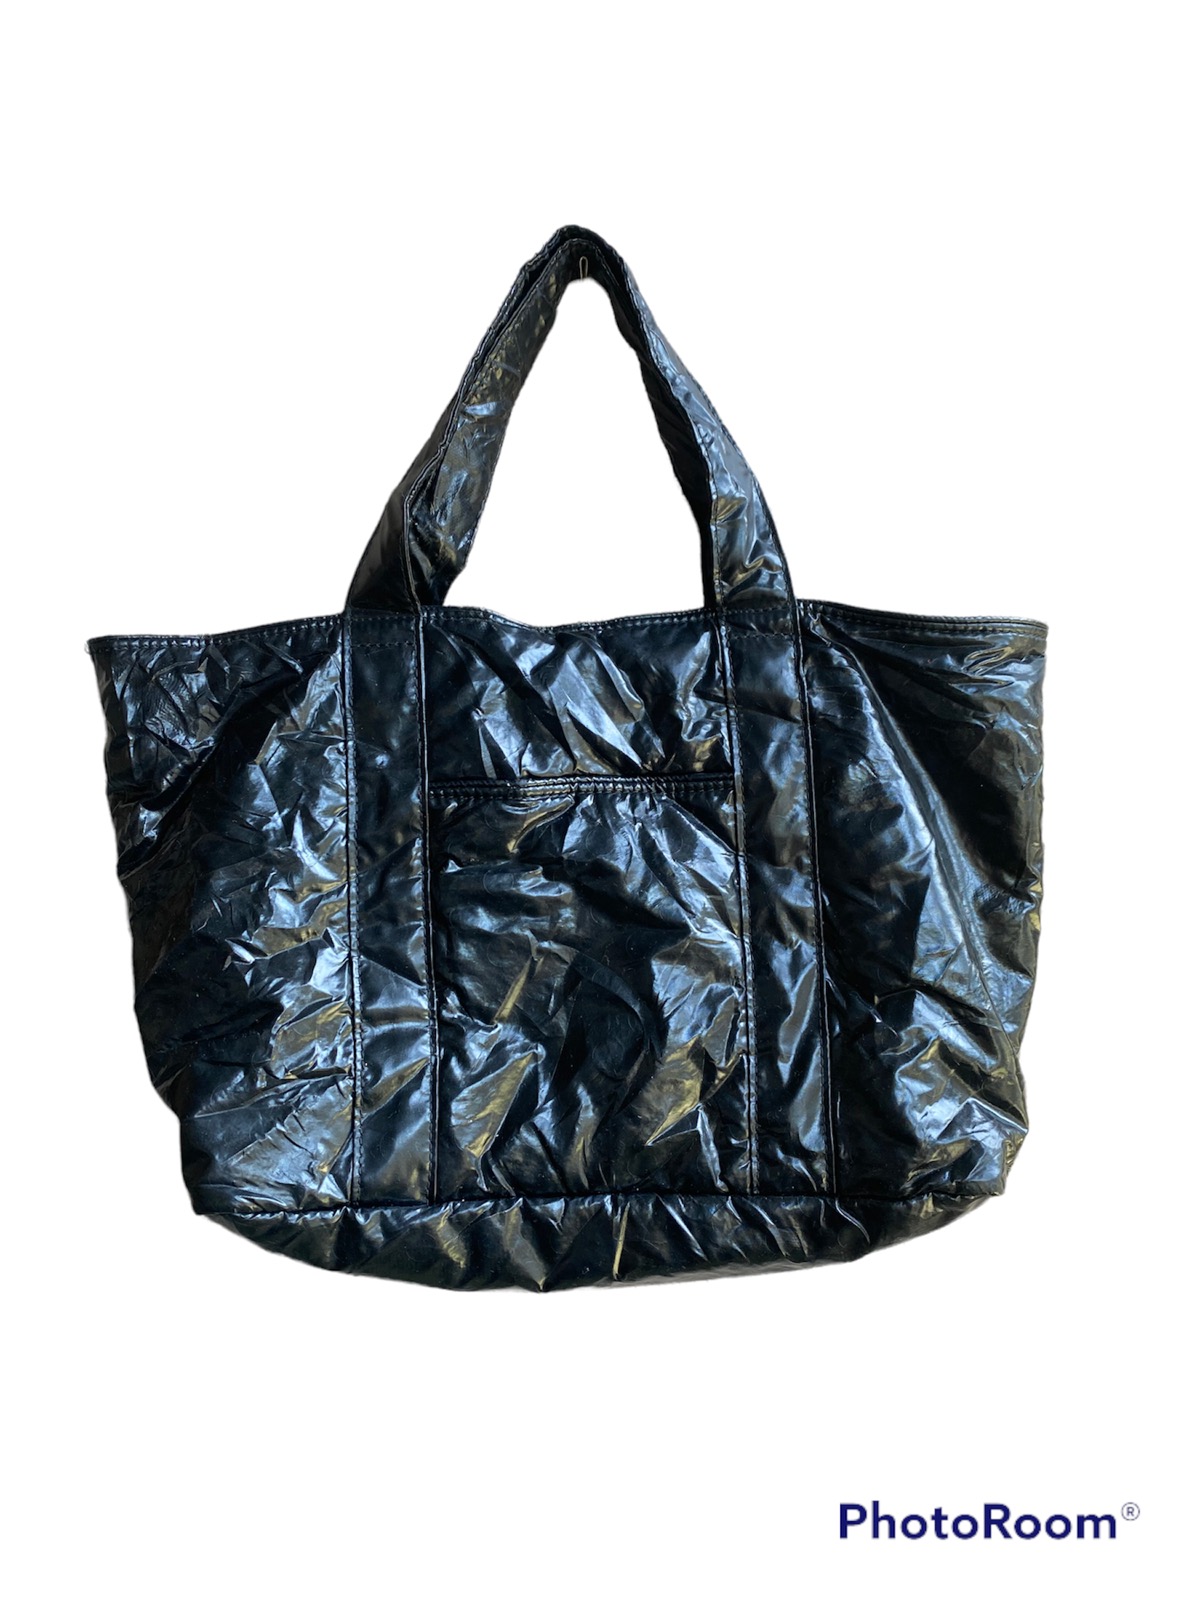 Japanese Brand - Porter Girl Carry Bag - 2